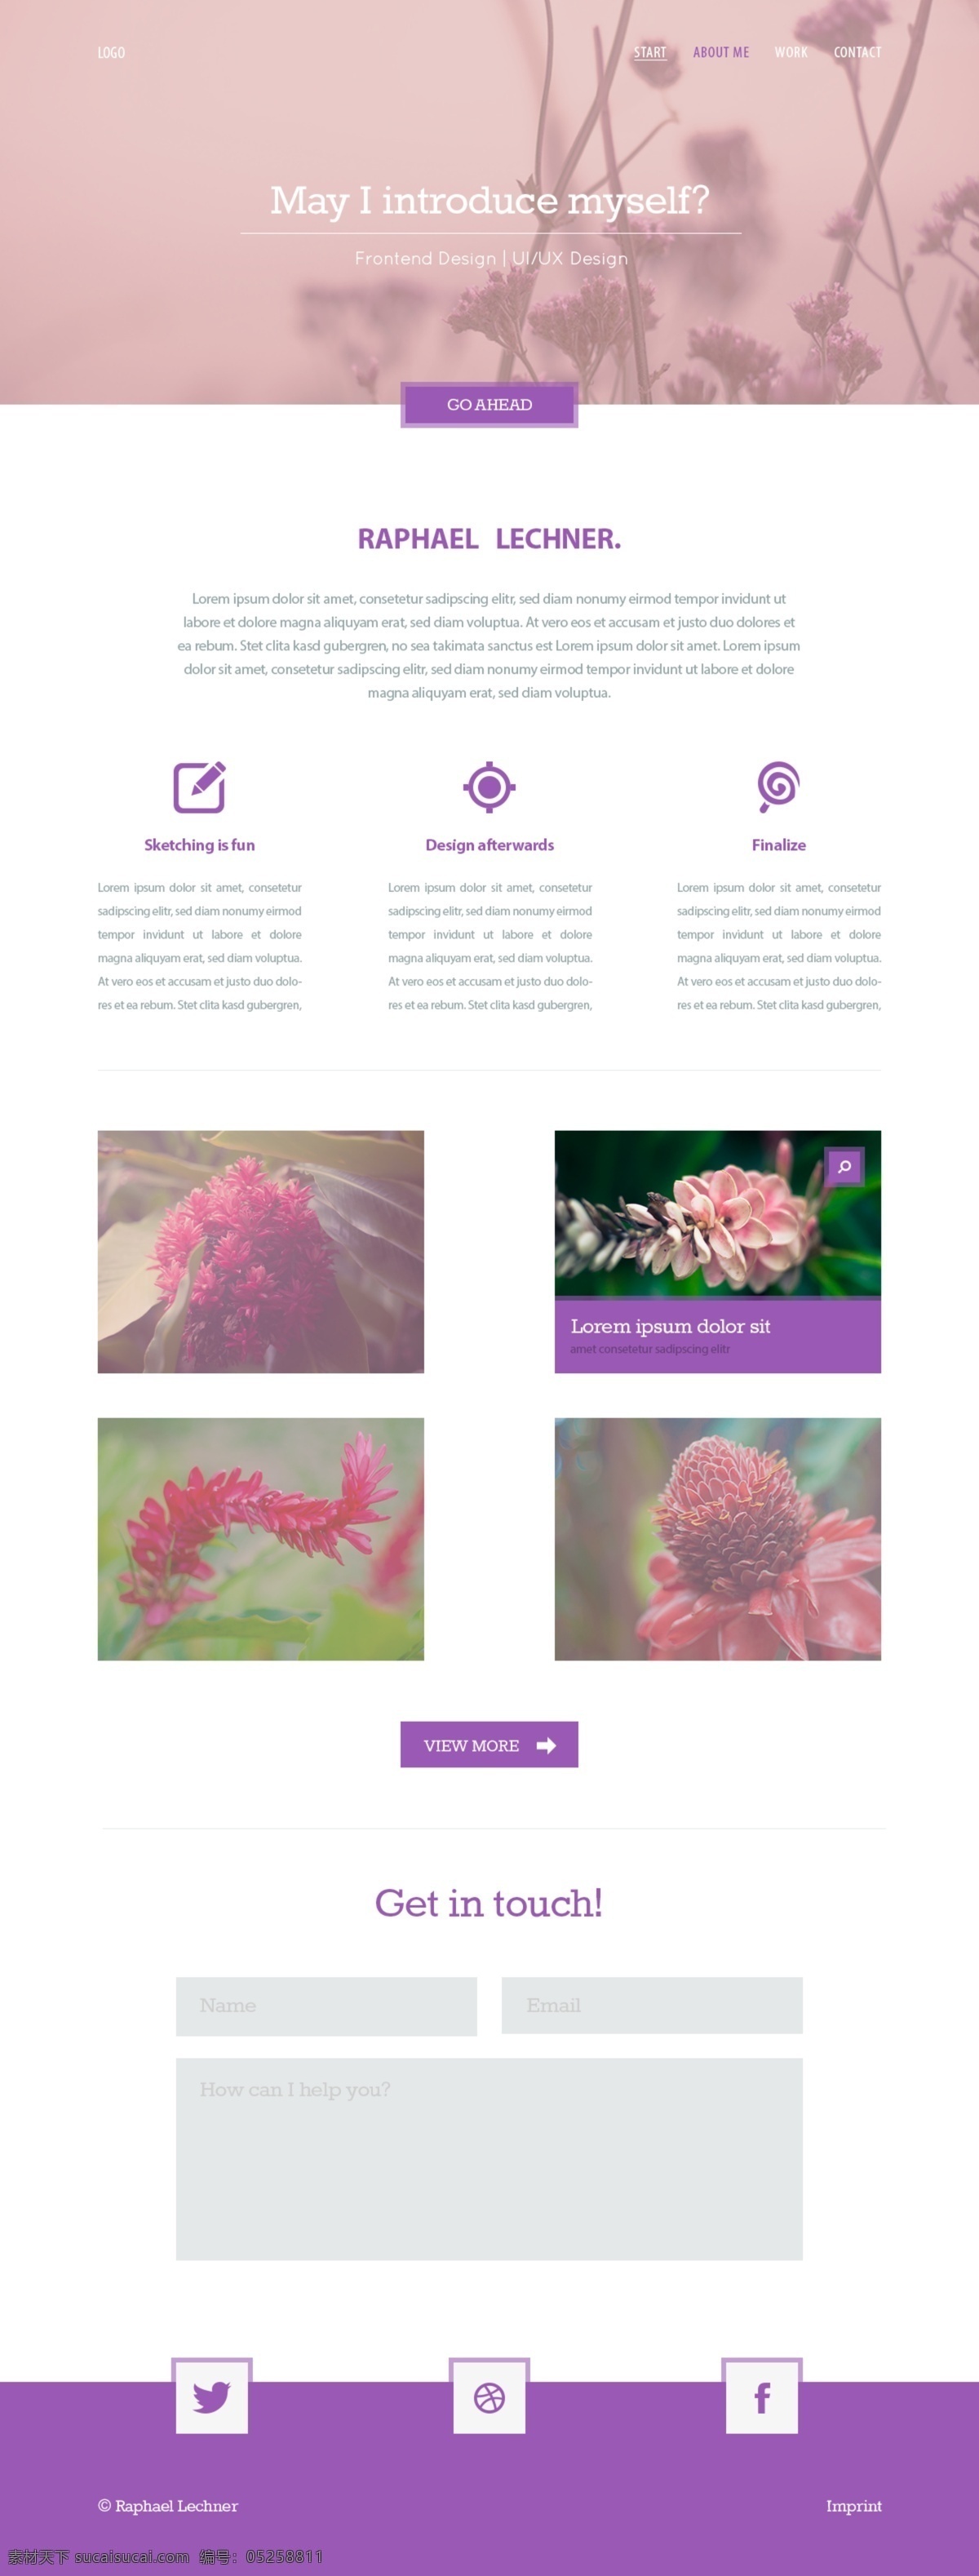 国外网站 简约风格 全屏 英文 英文模板 screendesign purple web 网页 高上大 界面设计 网页素材 其他网页素材